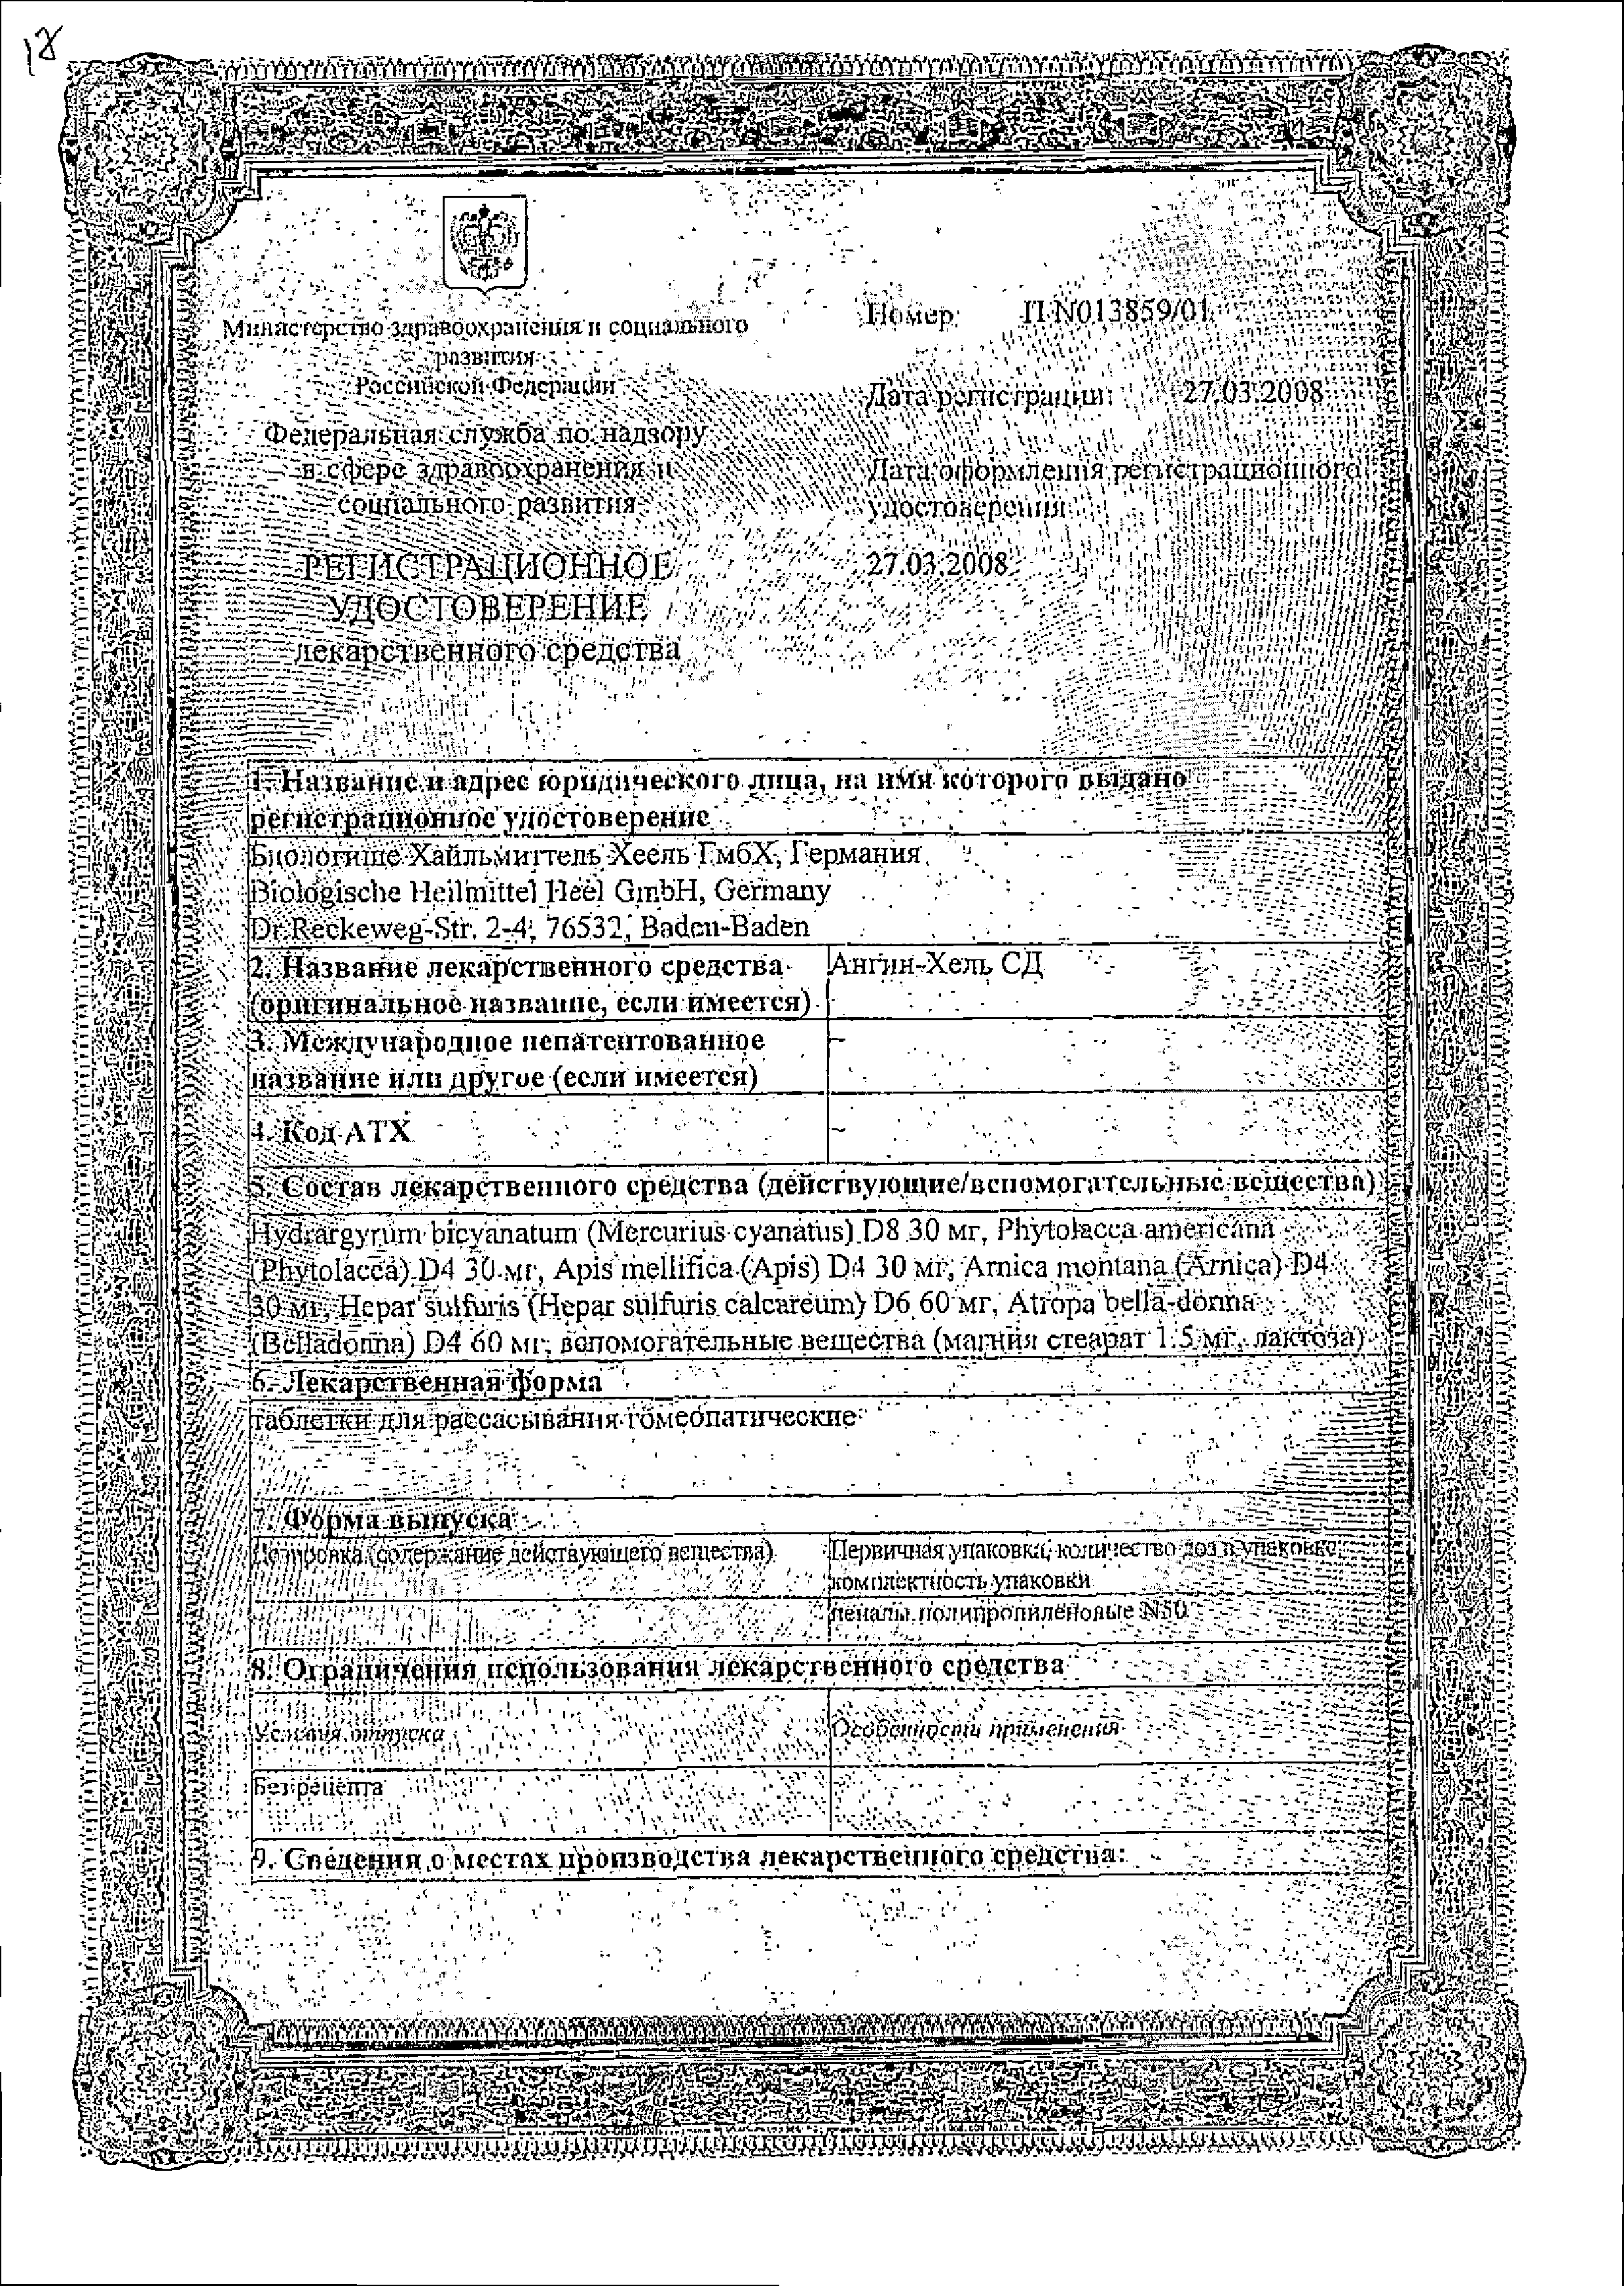 Ангин-Хель СД сертификат